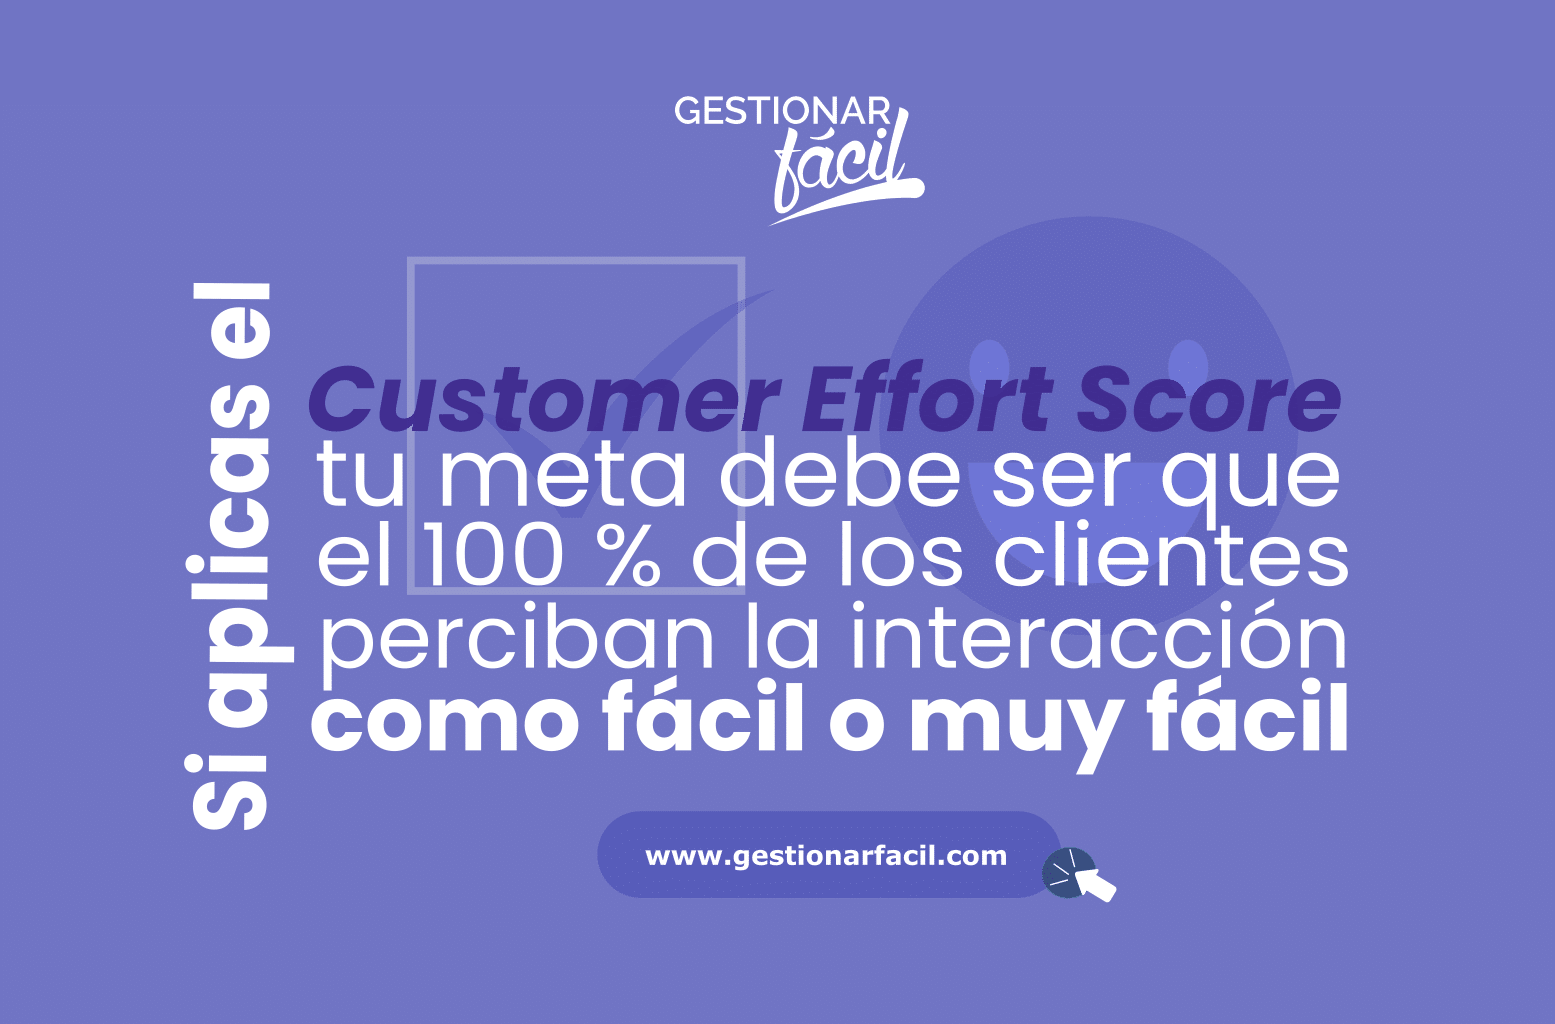 Si aplicas el Customer Effort Score tu meta debe ser que el 100 % de los clientes perciban la interacción como "fácil o muy fácil".